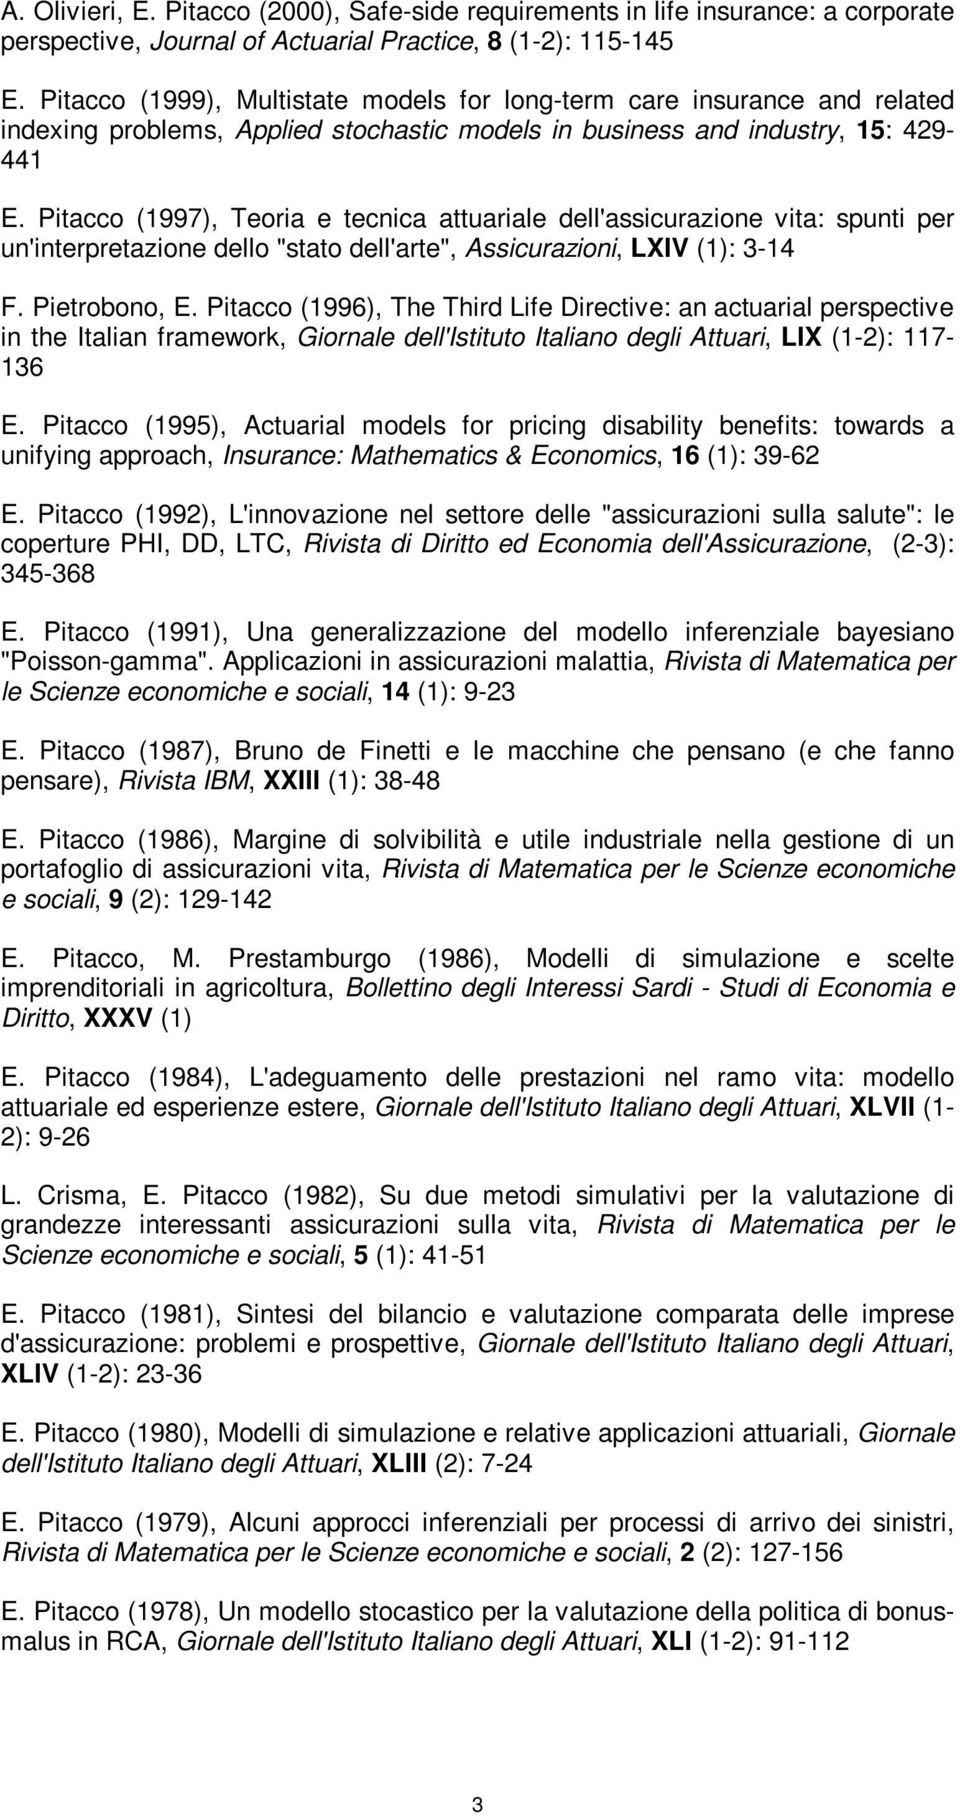 Pitacco (1997), Teoria e tecnica attuariale dell'assicurazione vita: spunti per un'interpretazione dello "stato dell'arte", Assicurazioni, LXIV (1): 3-14 F. Pietrobono, E.